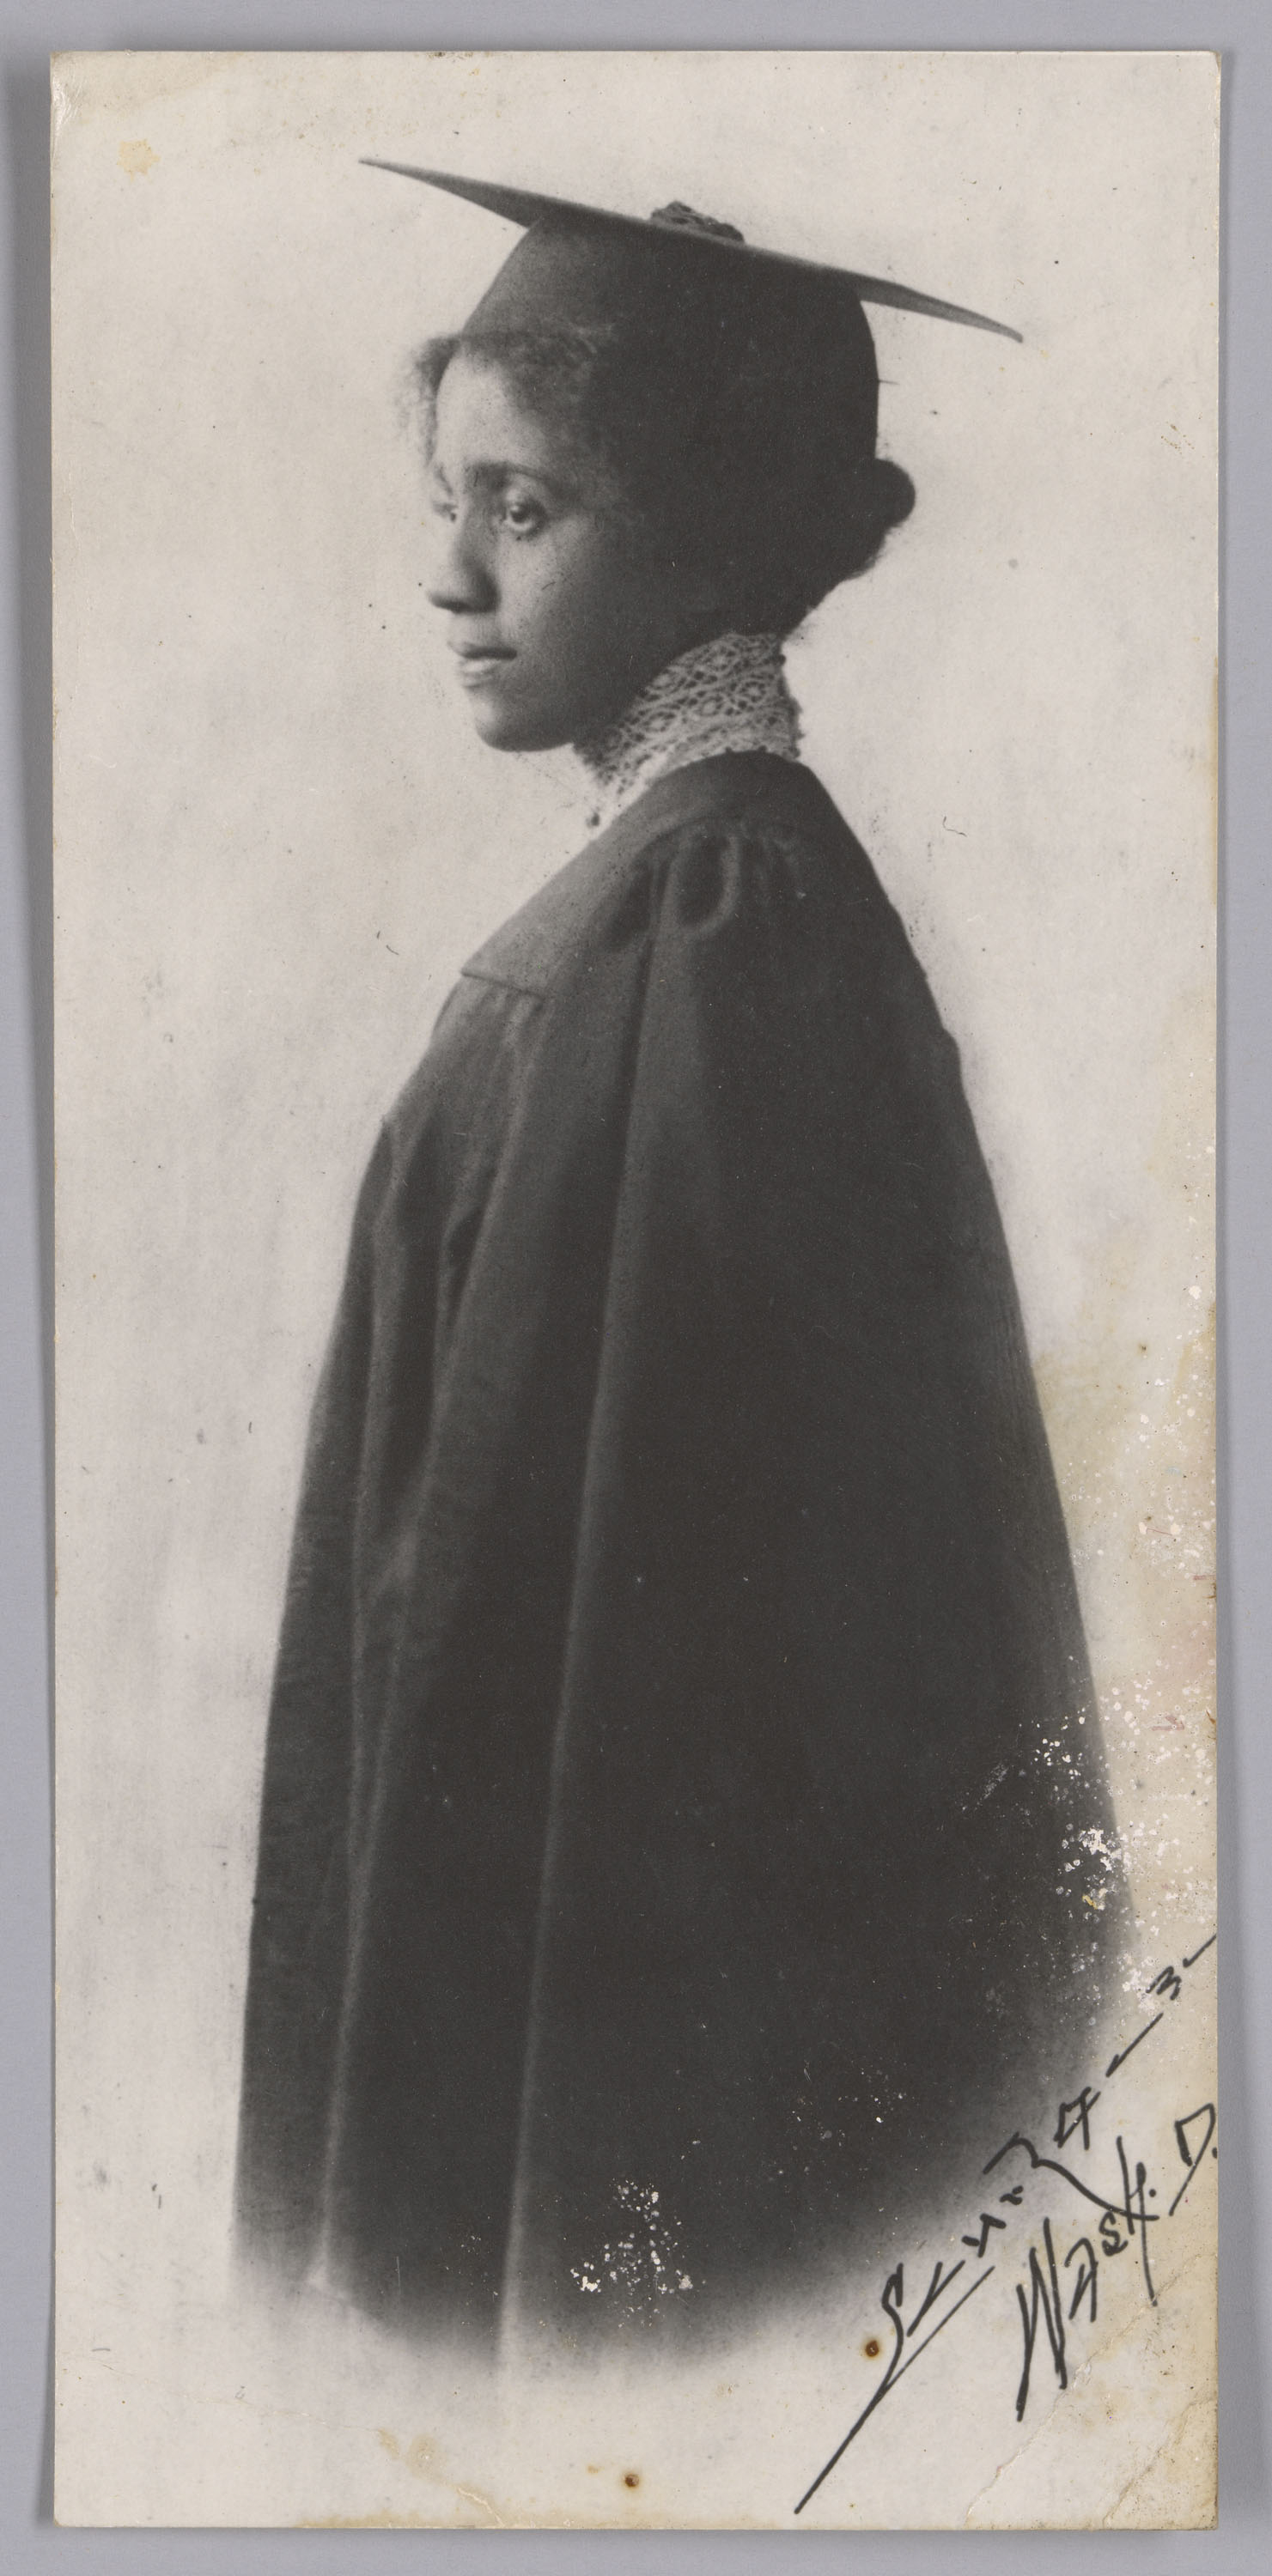 Portrait of a woman in graduation attire